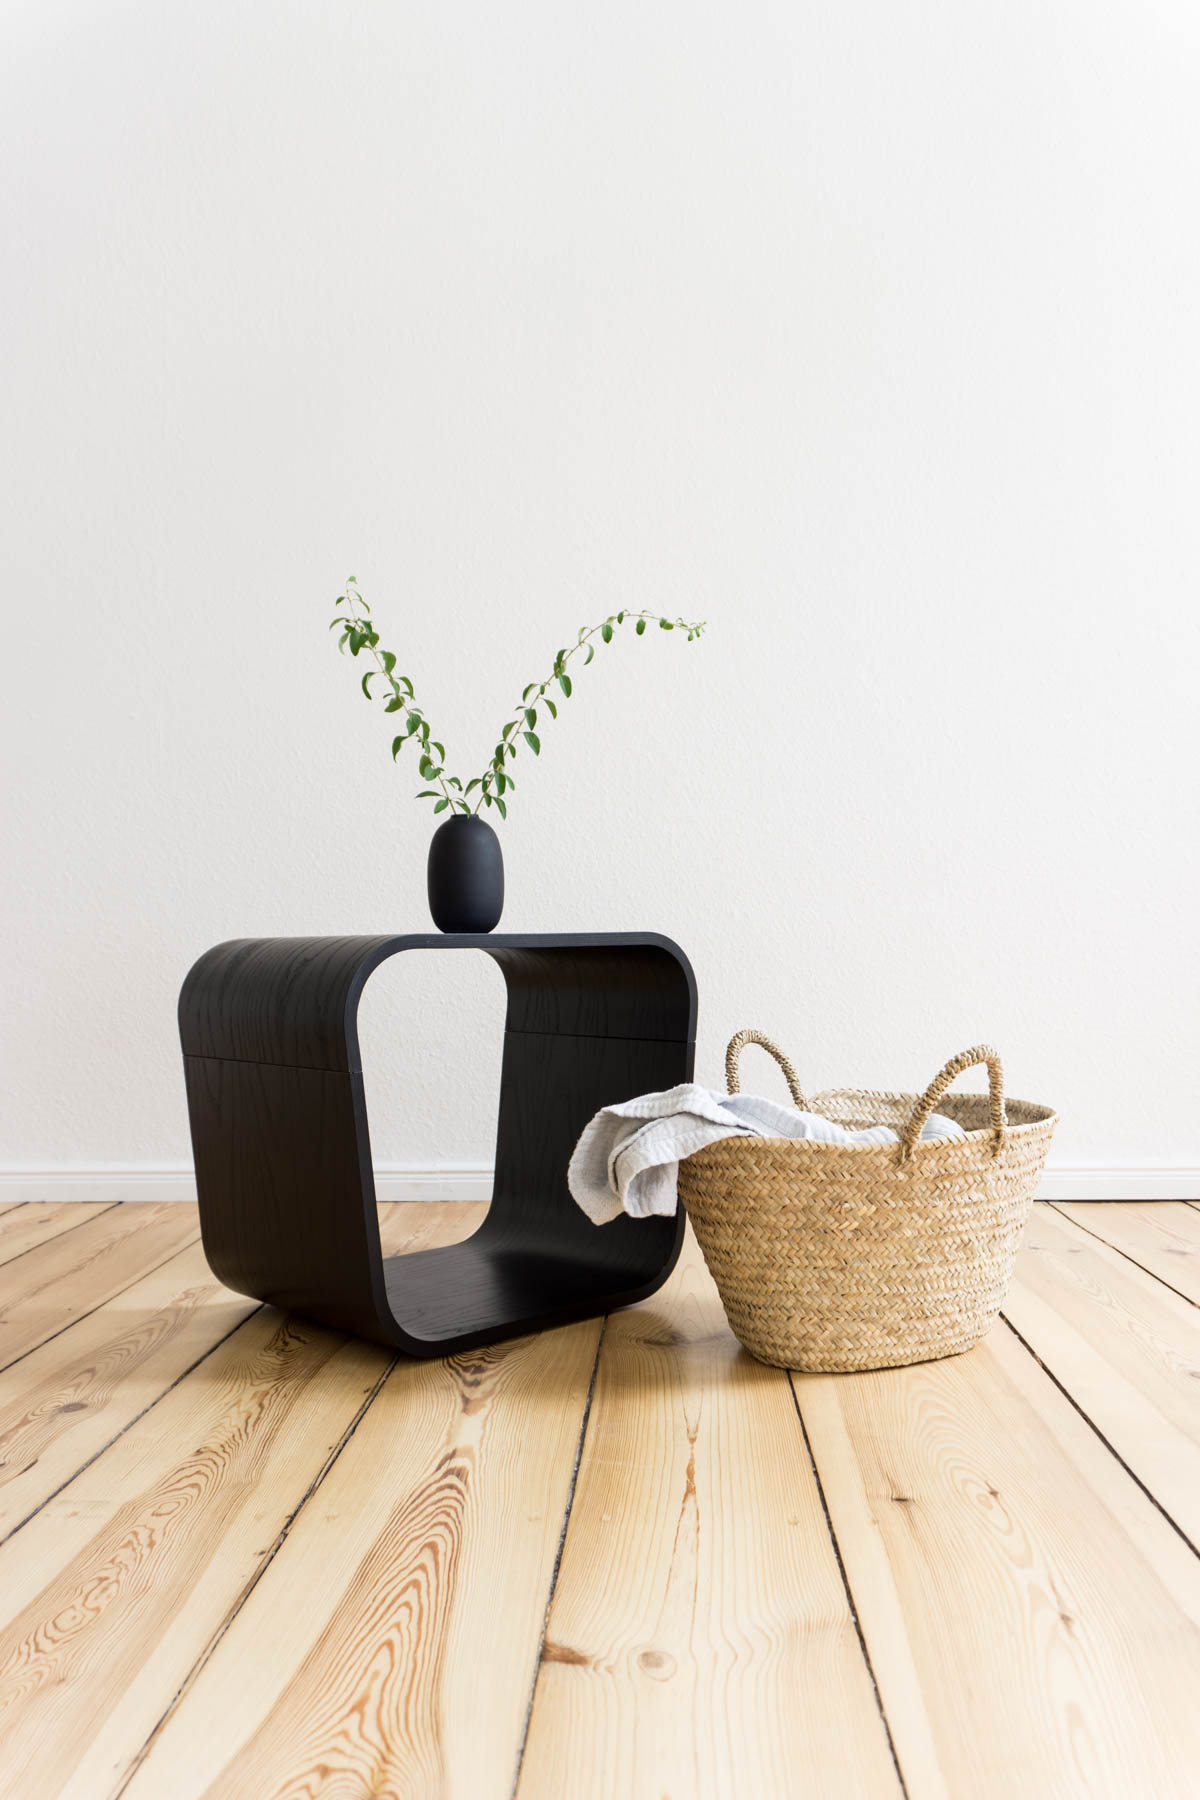 Corl Plywood Table / Minimalist Interior / Rebecca Goddard Furniture Design